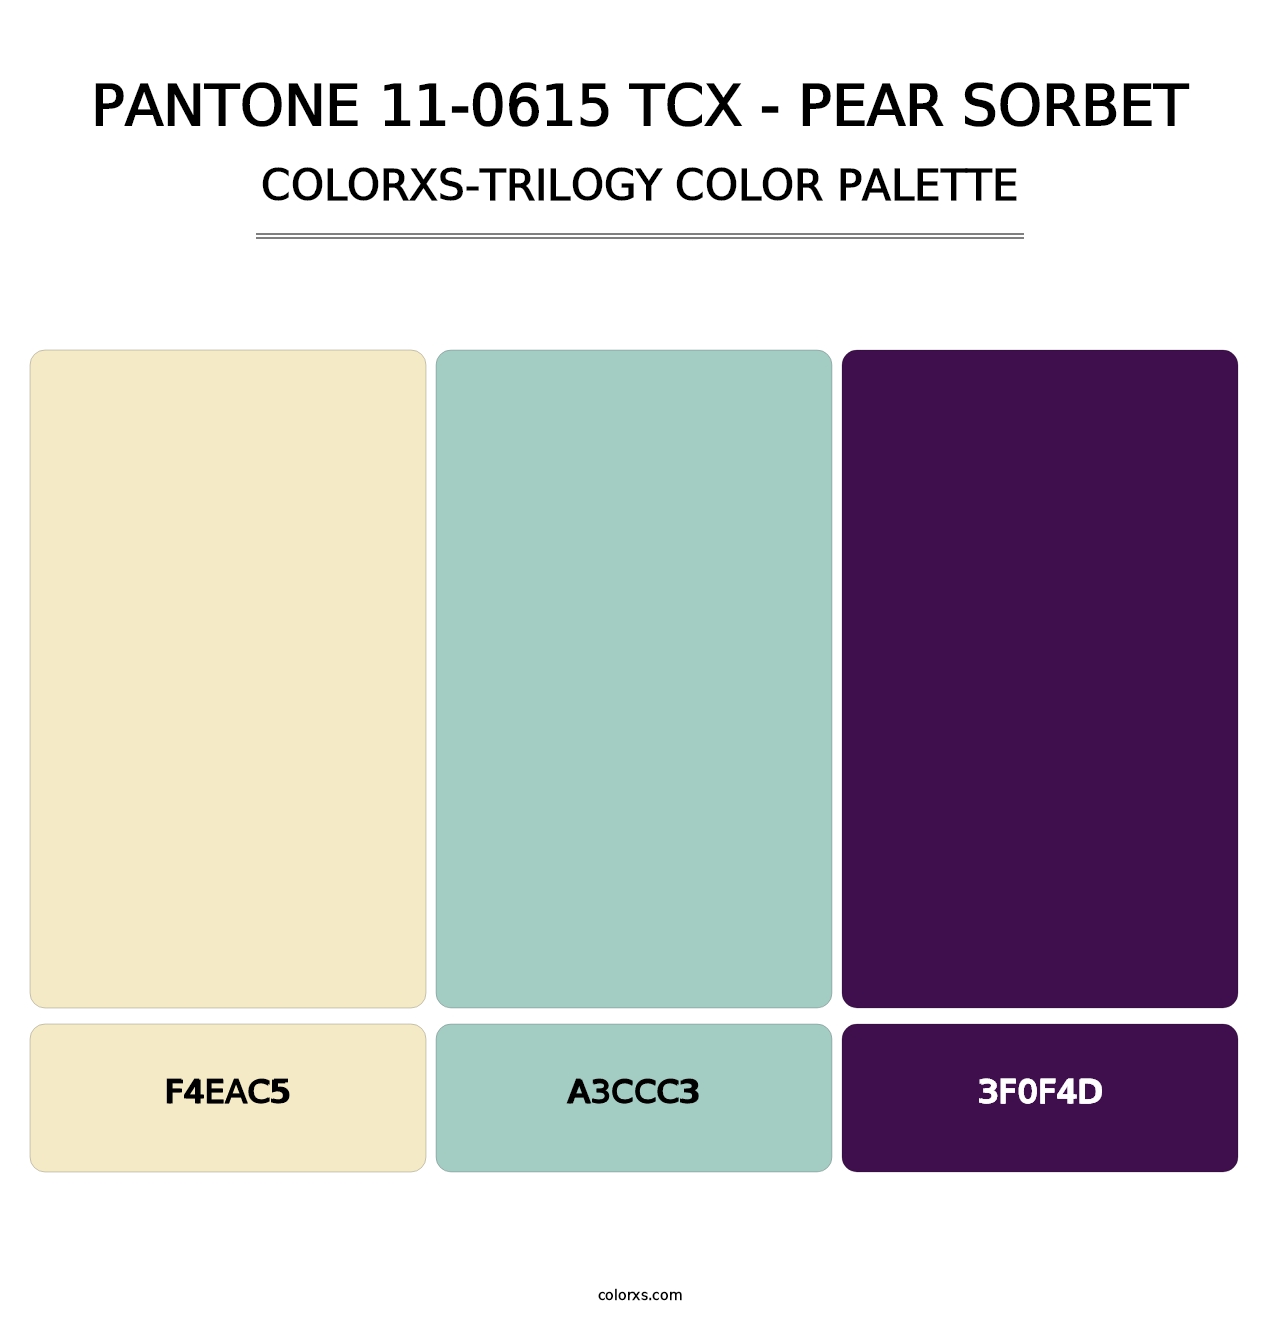 PANTONE 11-0615 TCX - Pear Sorbet - Colorxs Trilogy Palette